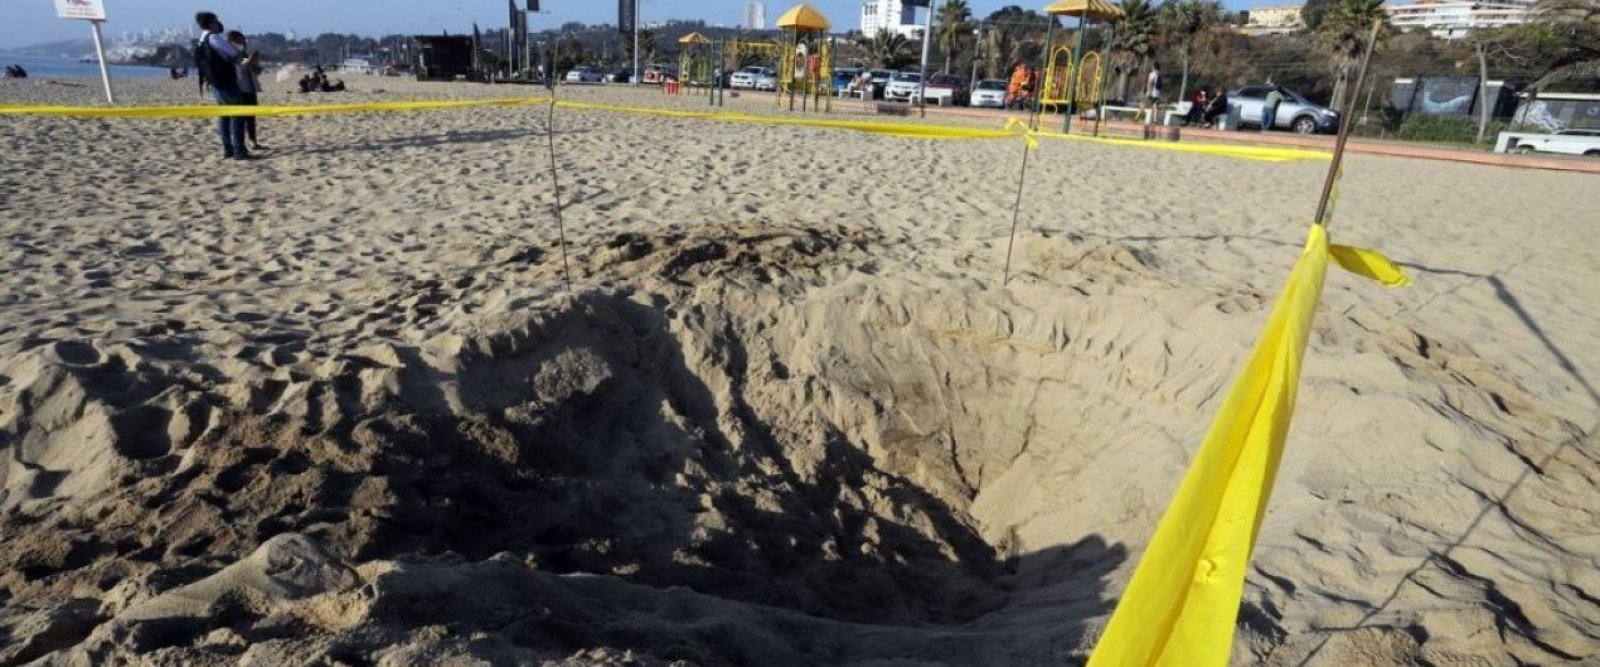 Niña de 5 años muere al quedar enterrada en la arena en una playa en Estados Unidos